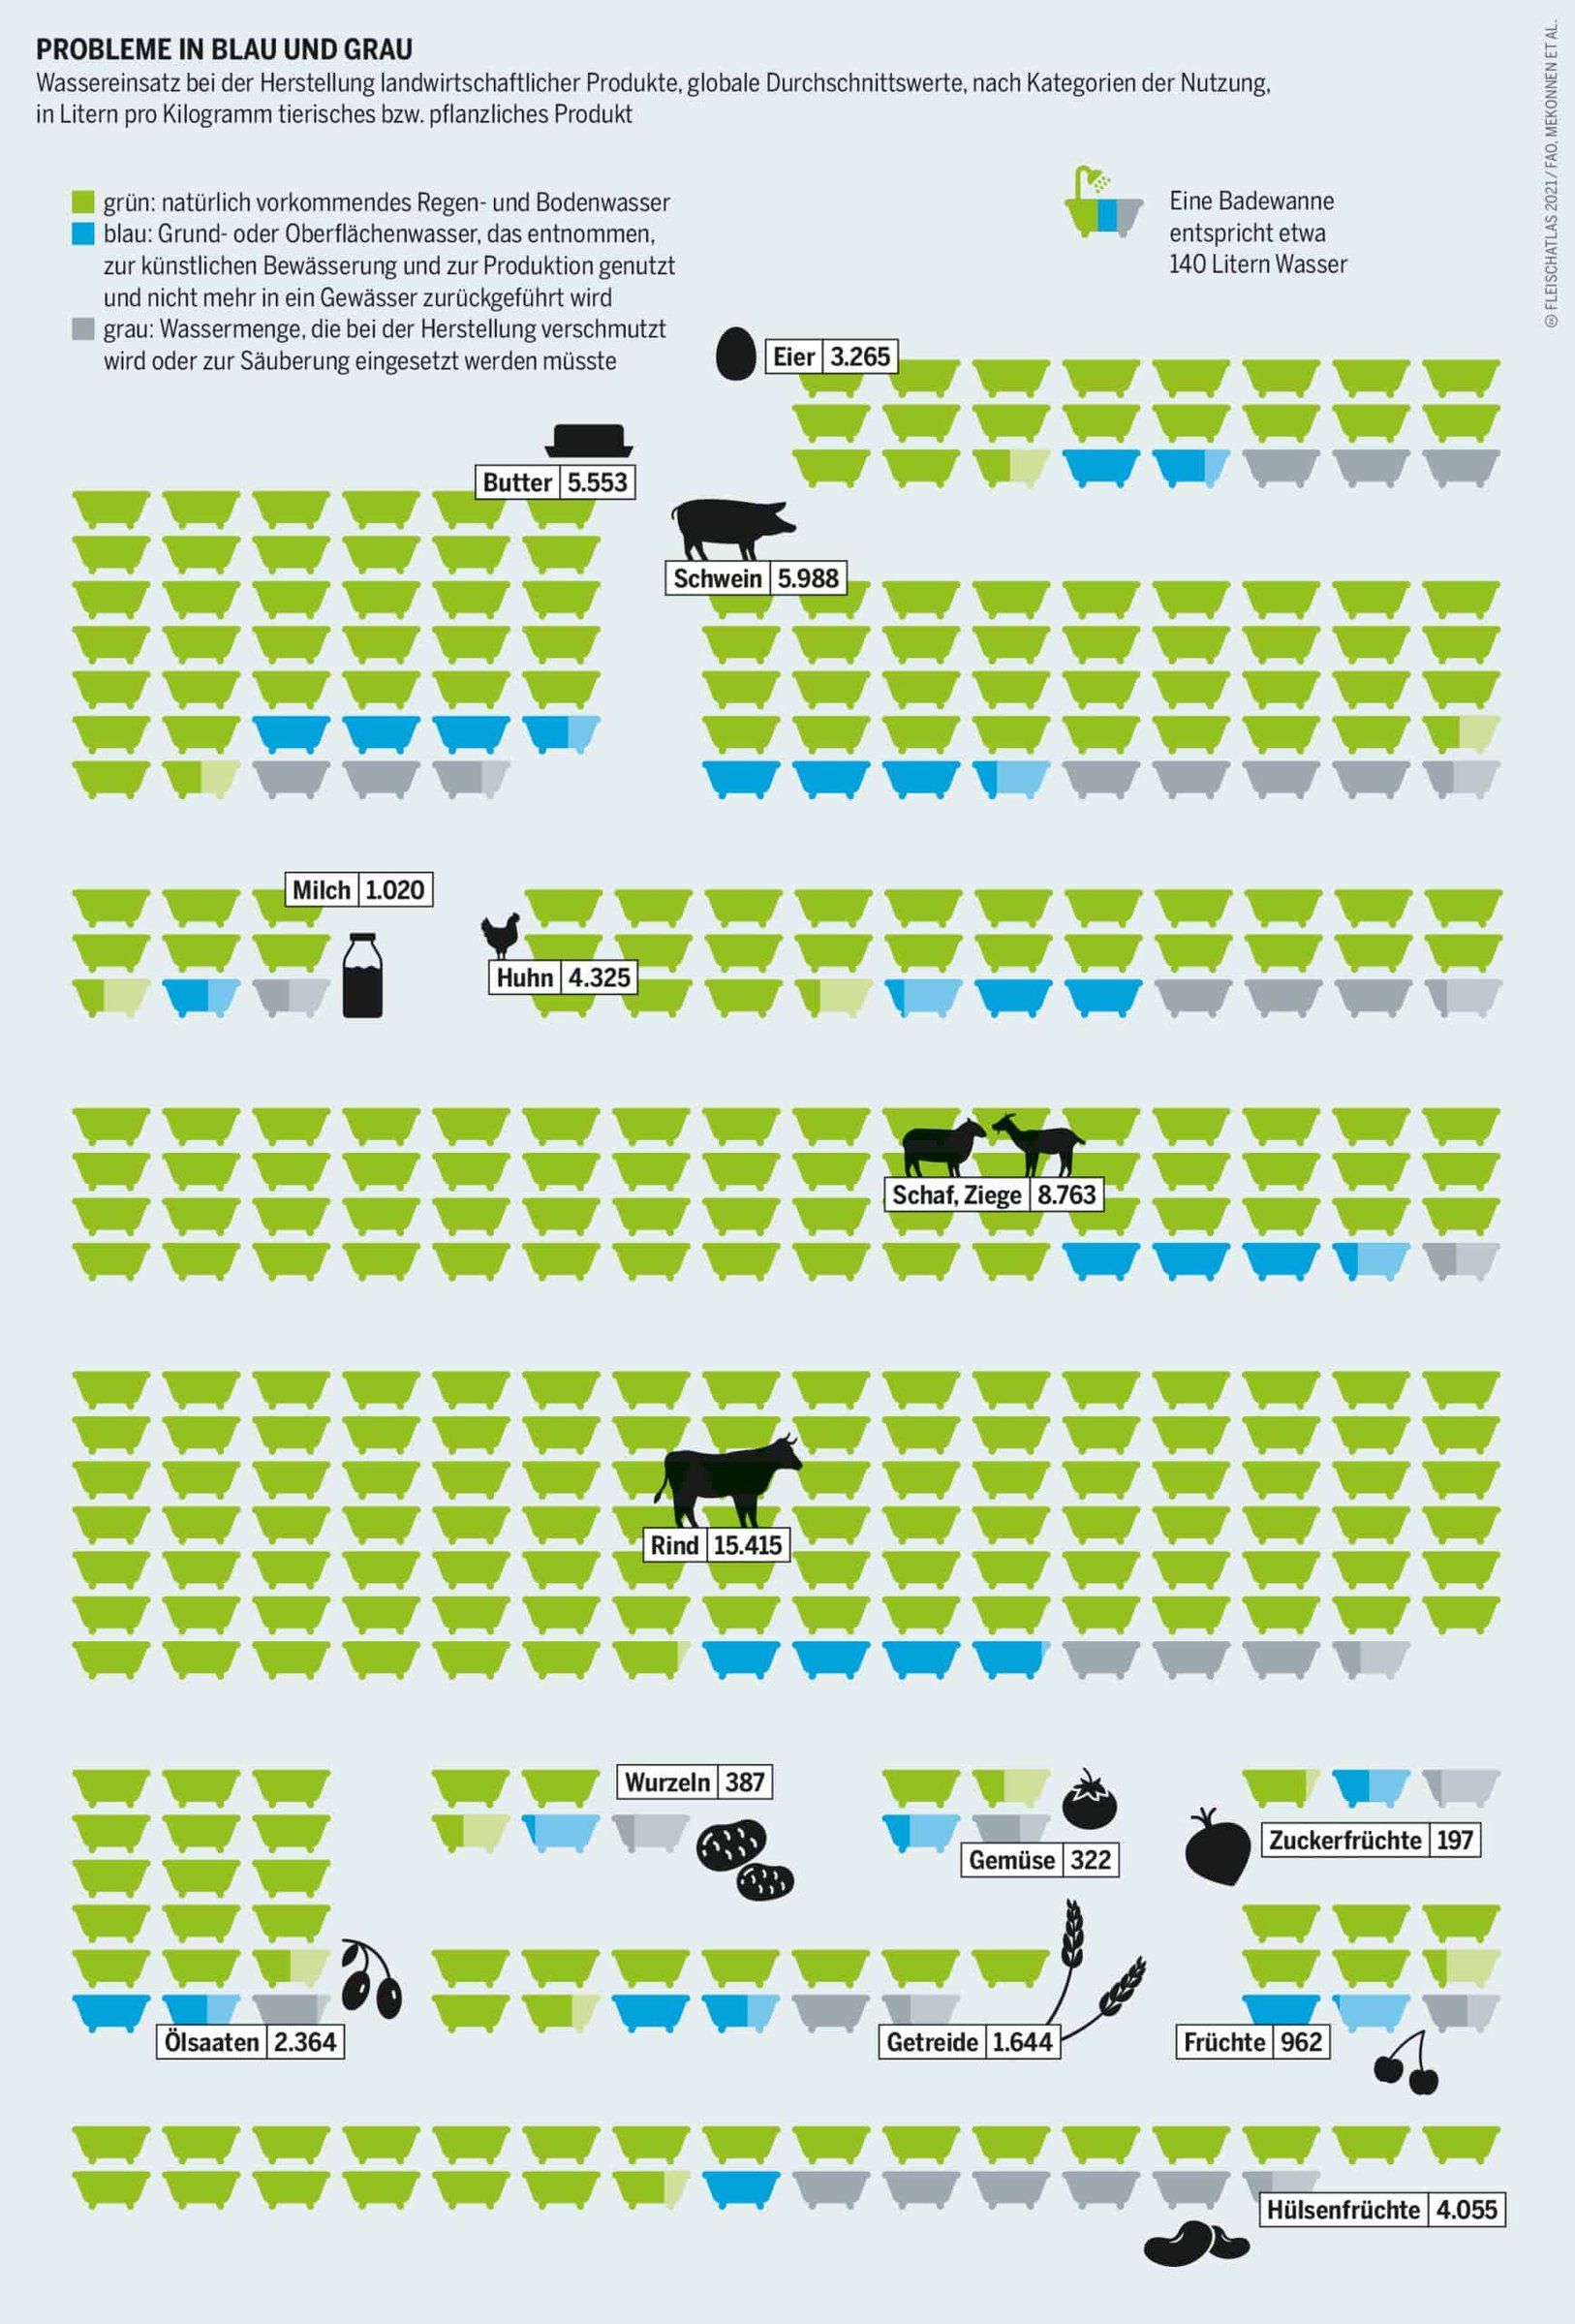 Probleme in blau und grau - Wassereinsatz bei der Herstellung landwirtschaftlicher Produkte Grafik: Fleischatlas 2021 | Bartz/Stockmar CC-BY-4.0